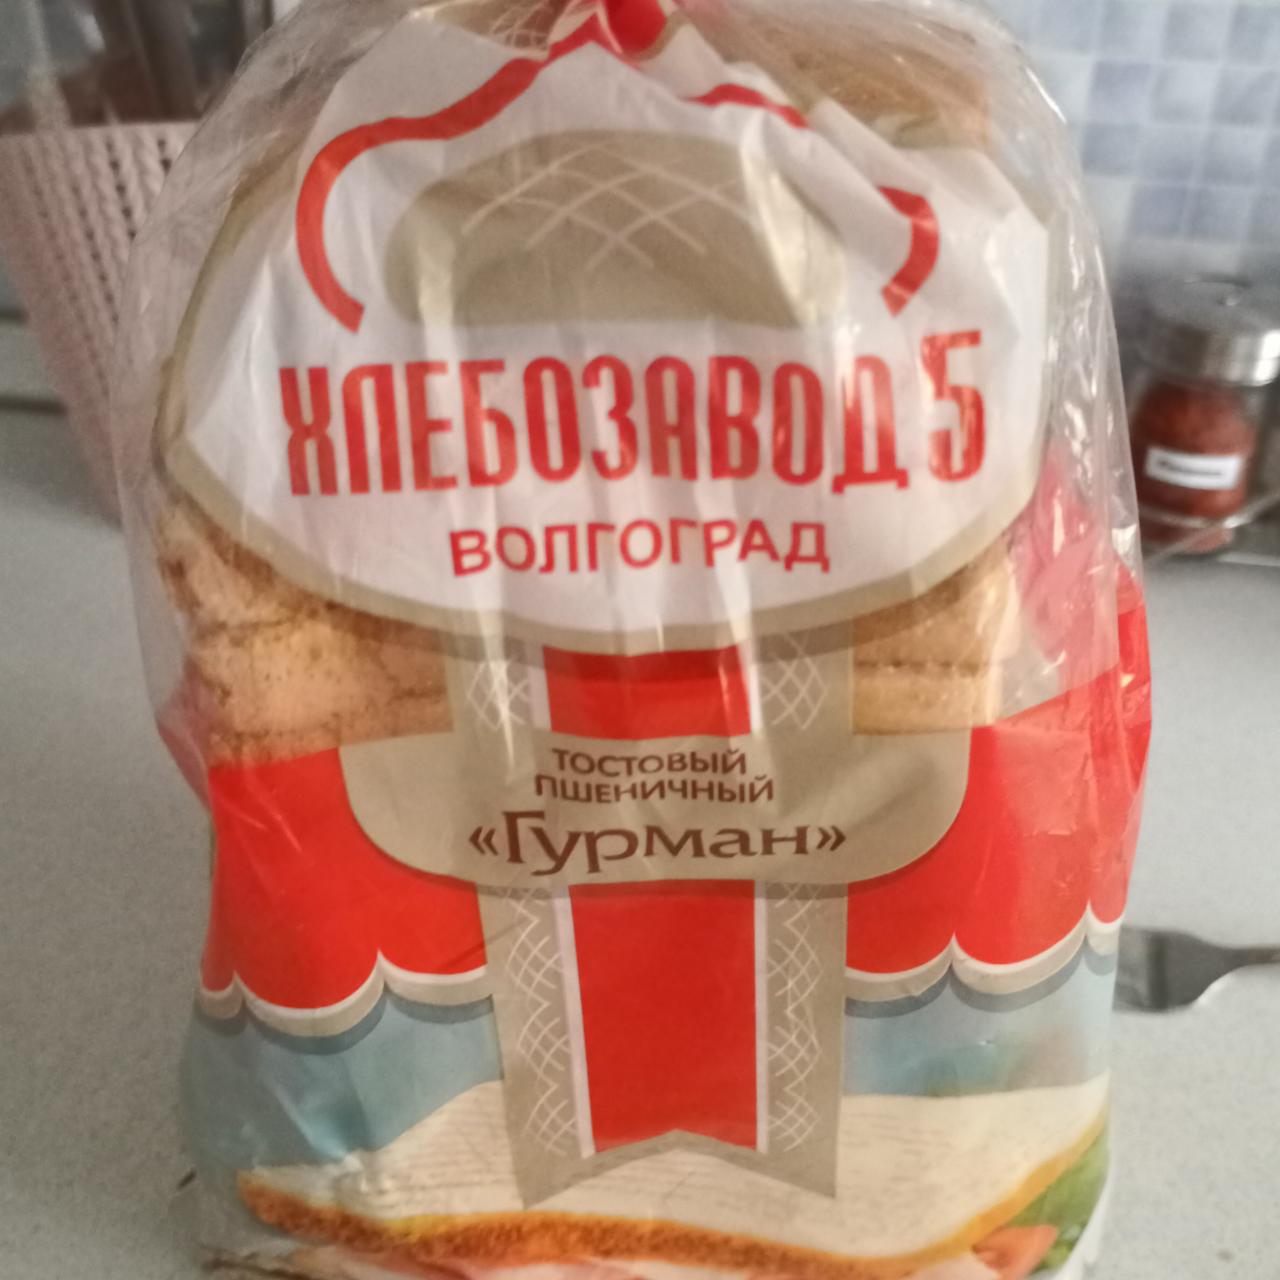 Фото - хлеб тостовый пшеничный Гурман Хлебозавод №5 Волгоград